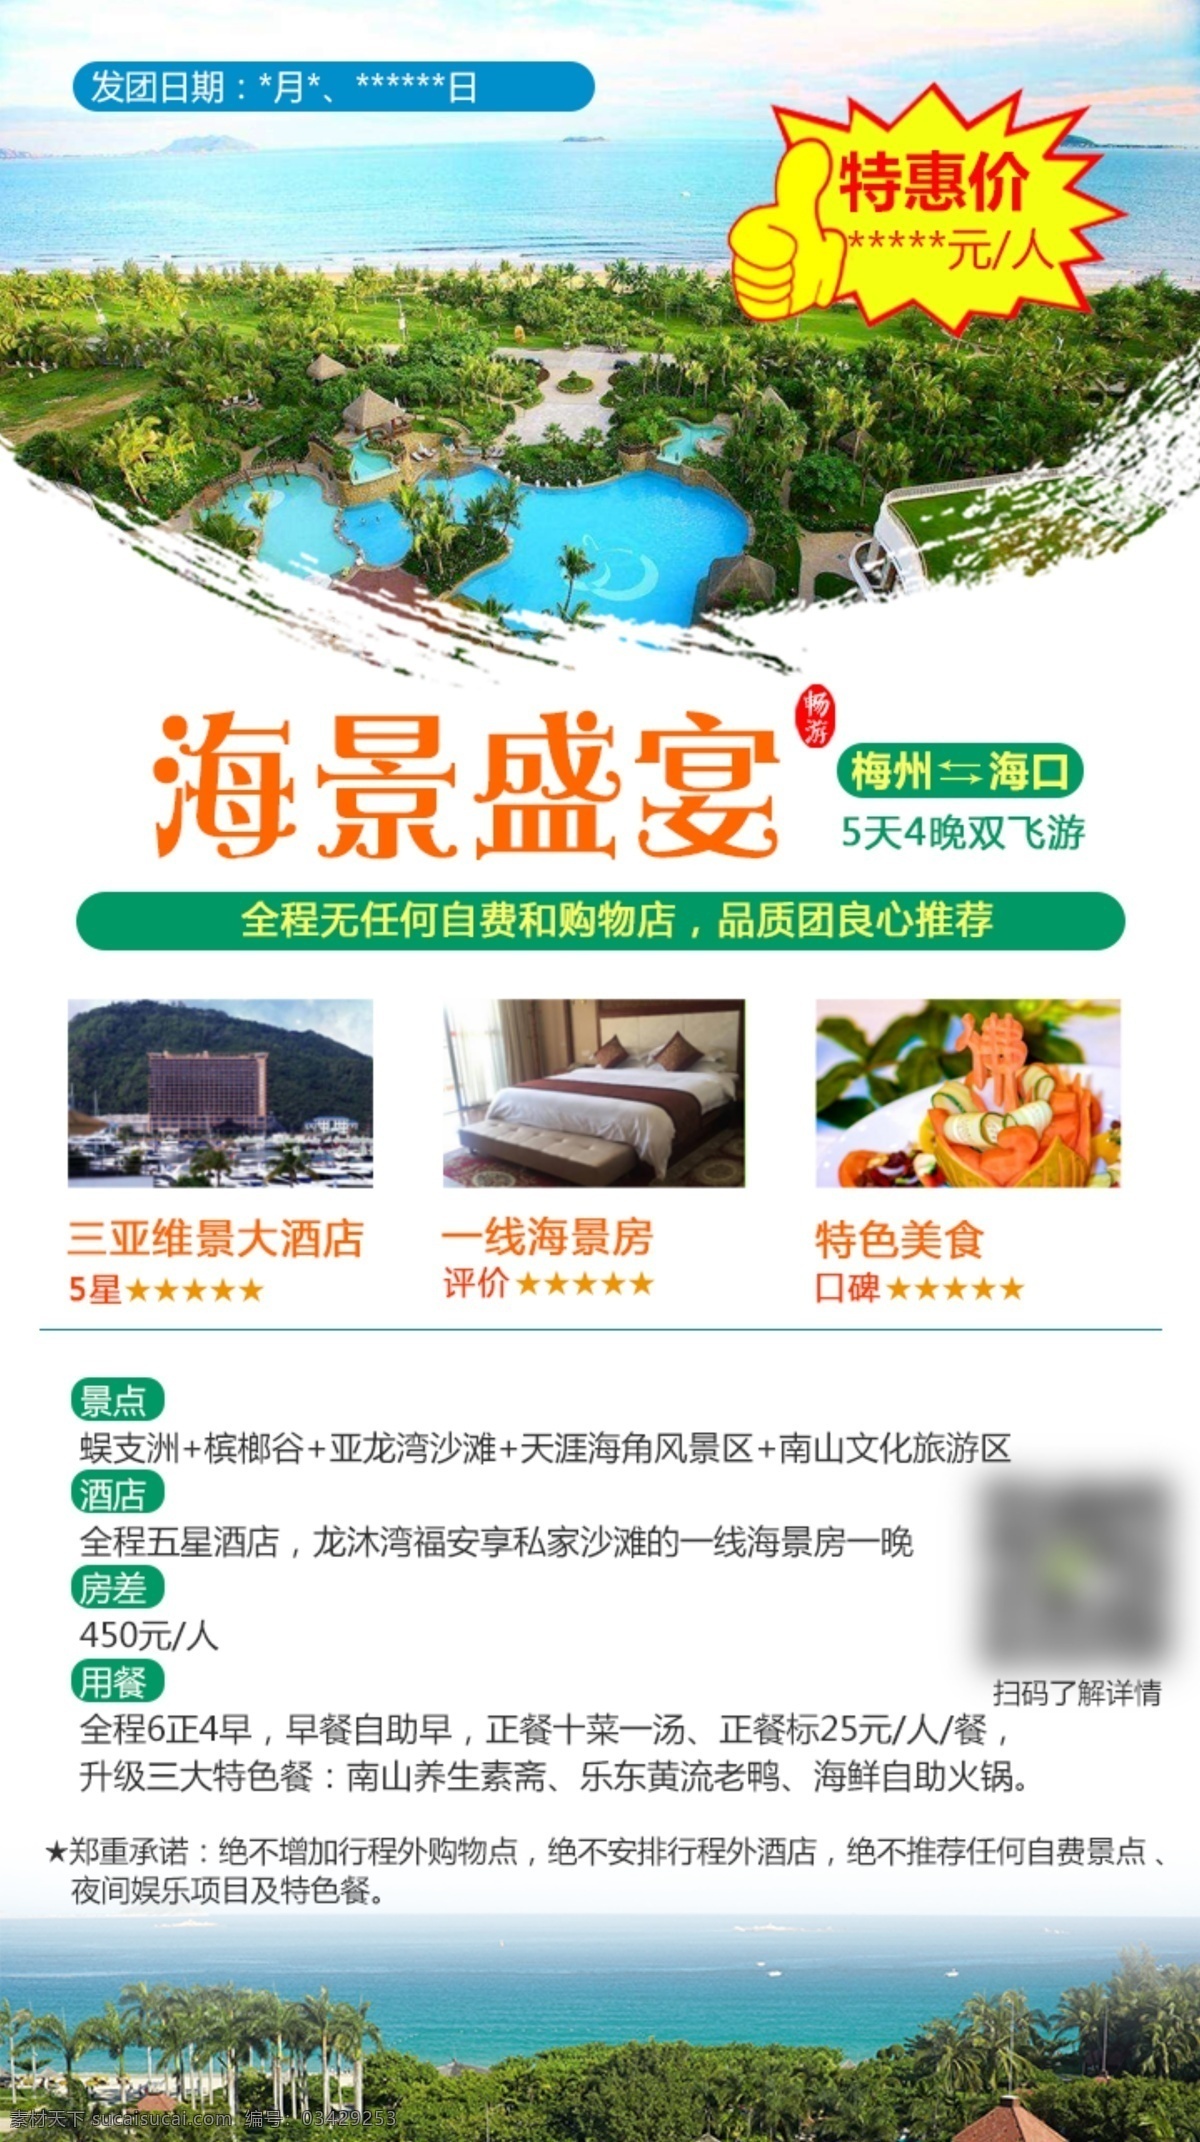 旅游 海报 三亚旅游 海南旅游 微 信 朋友 圈 广告 中国风 爆炸贴 度假